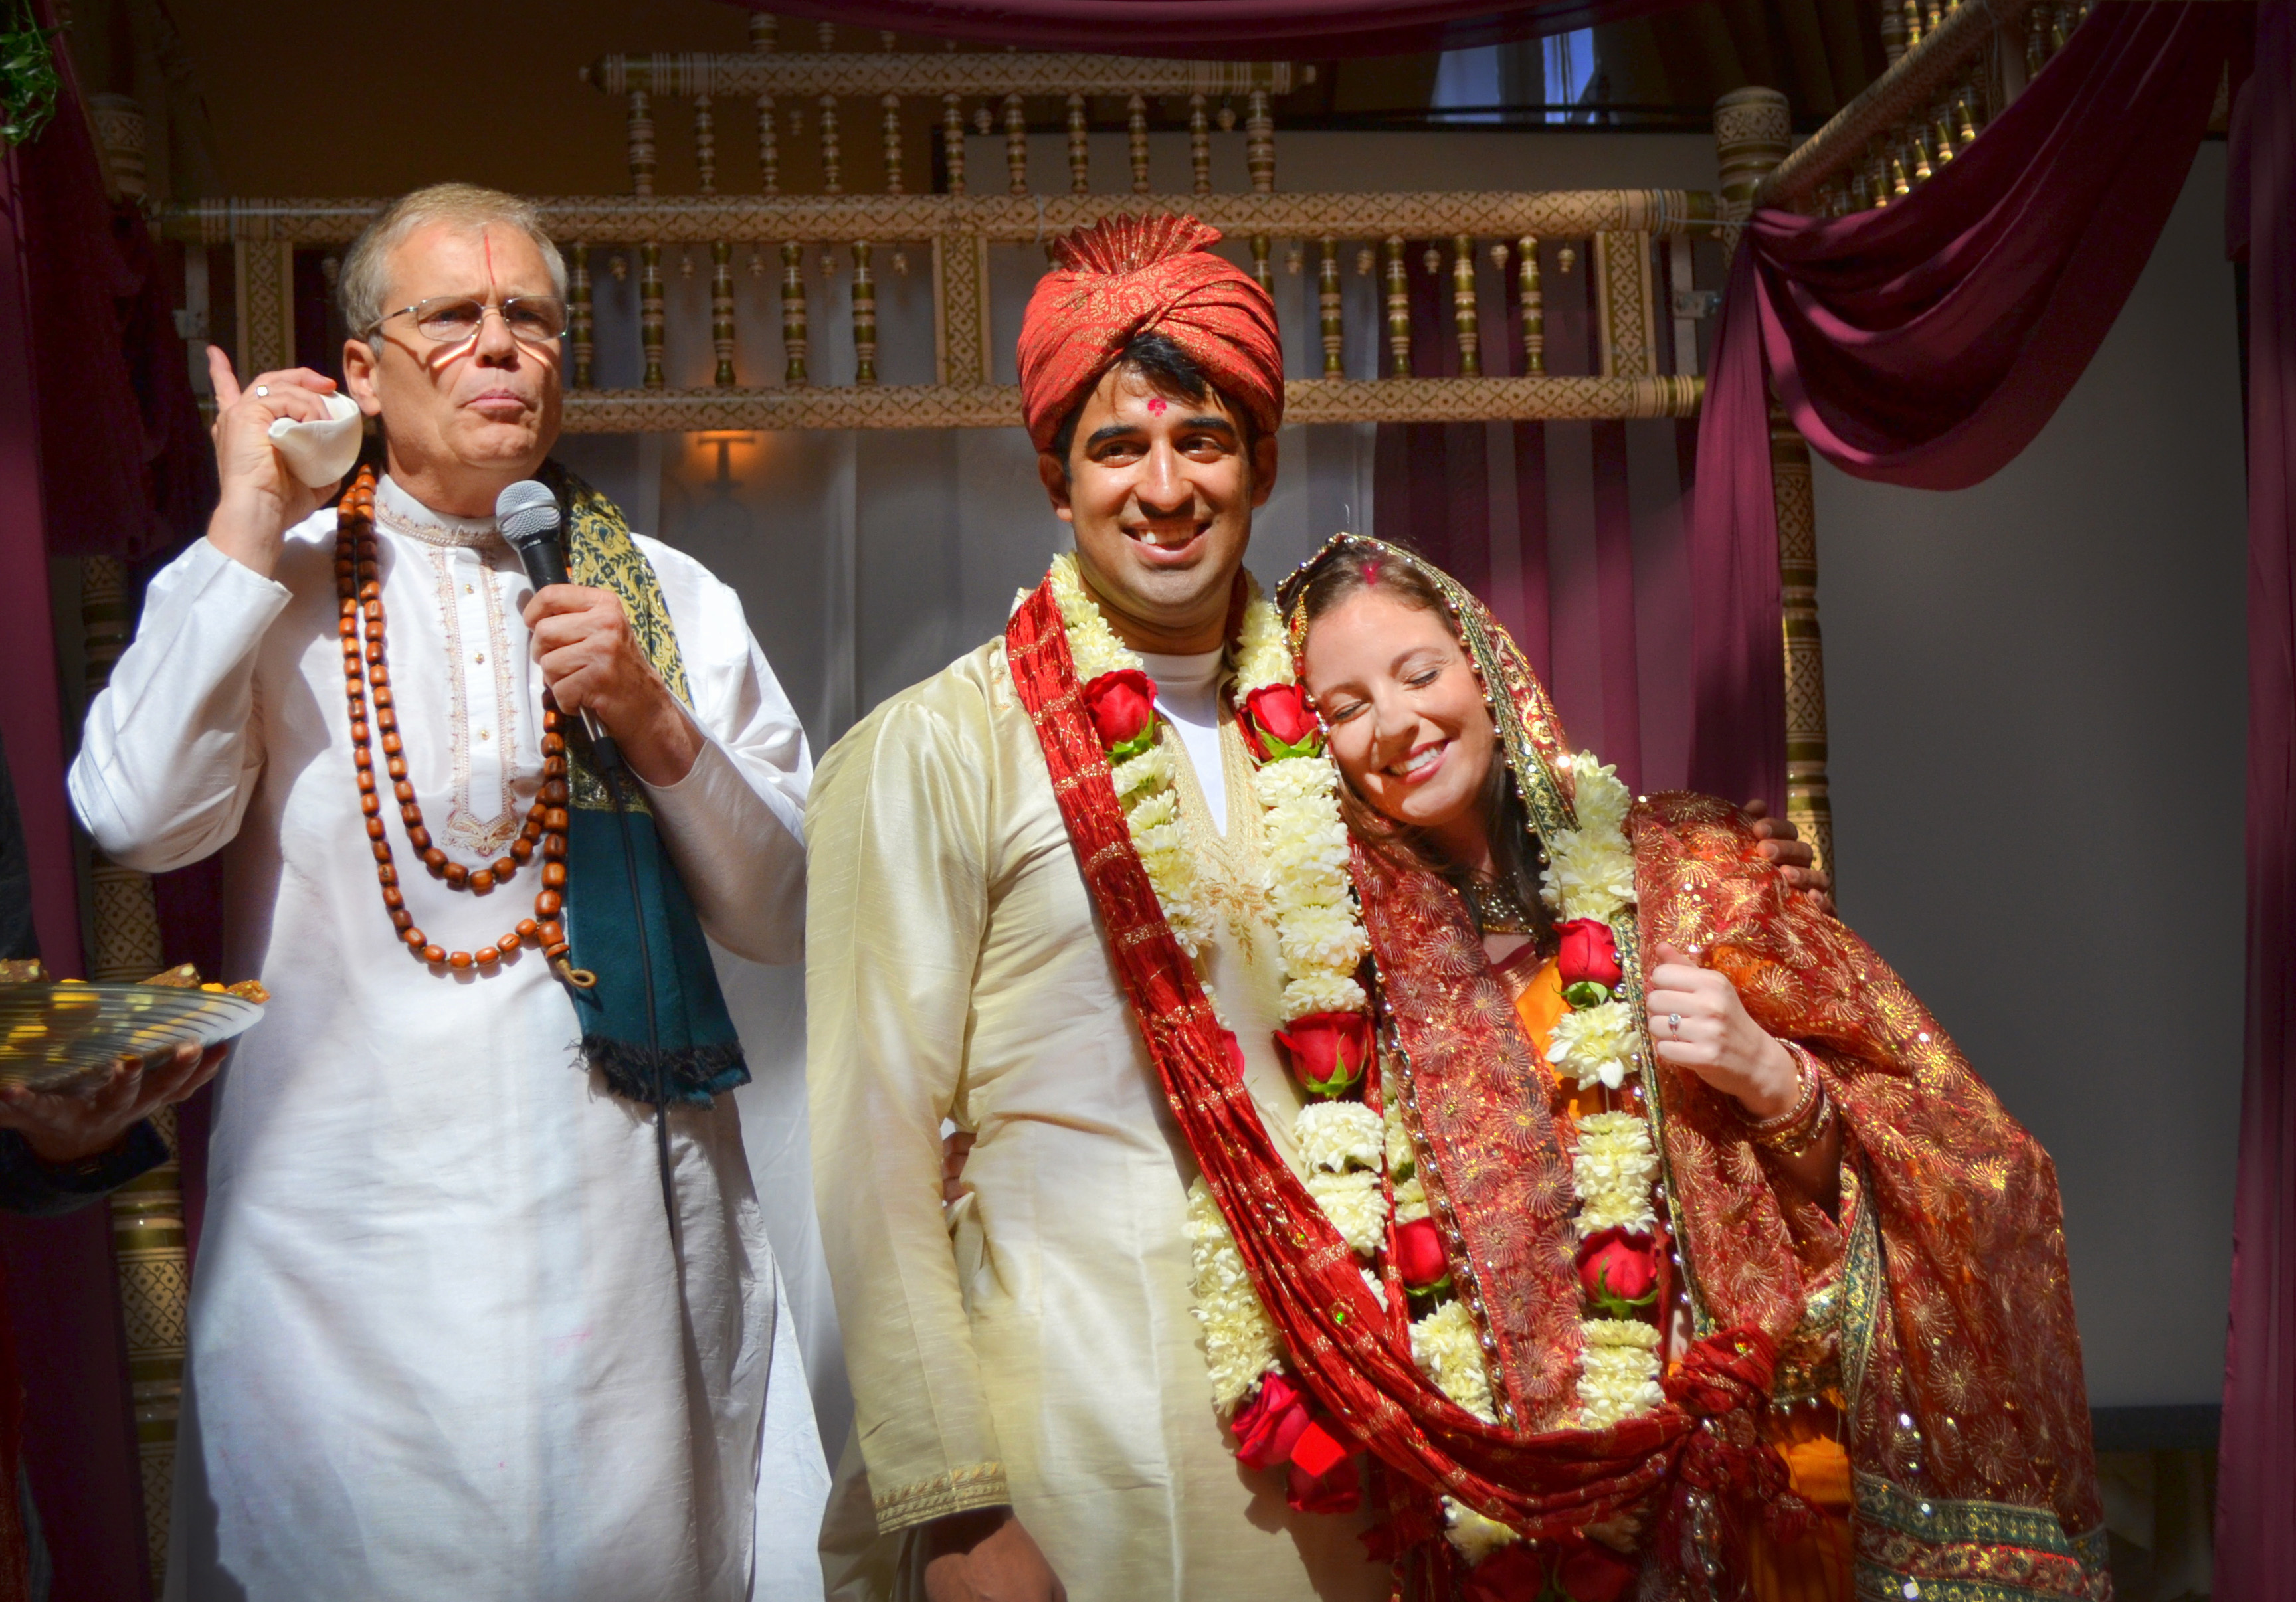 KPCC: Mixed-faith Hindu Weddings on the Rise